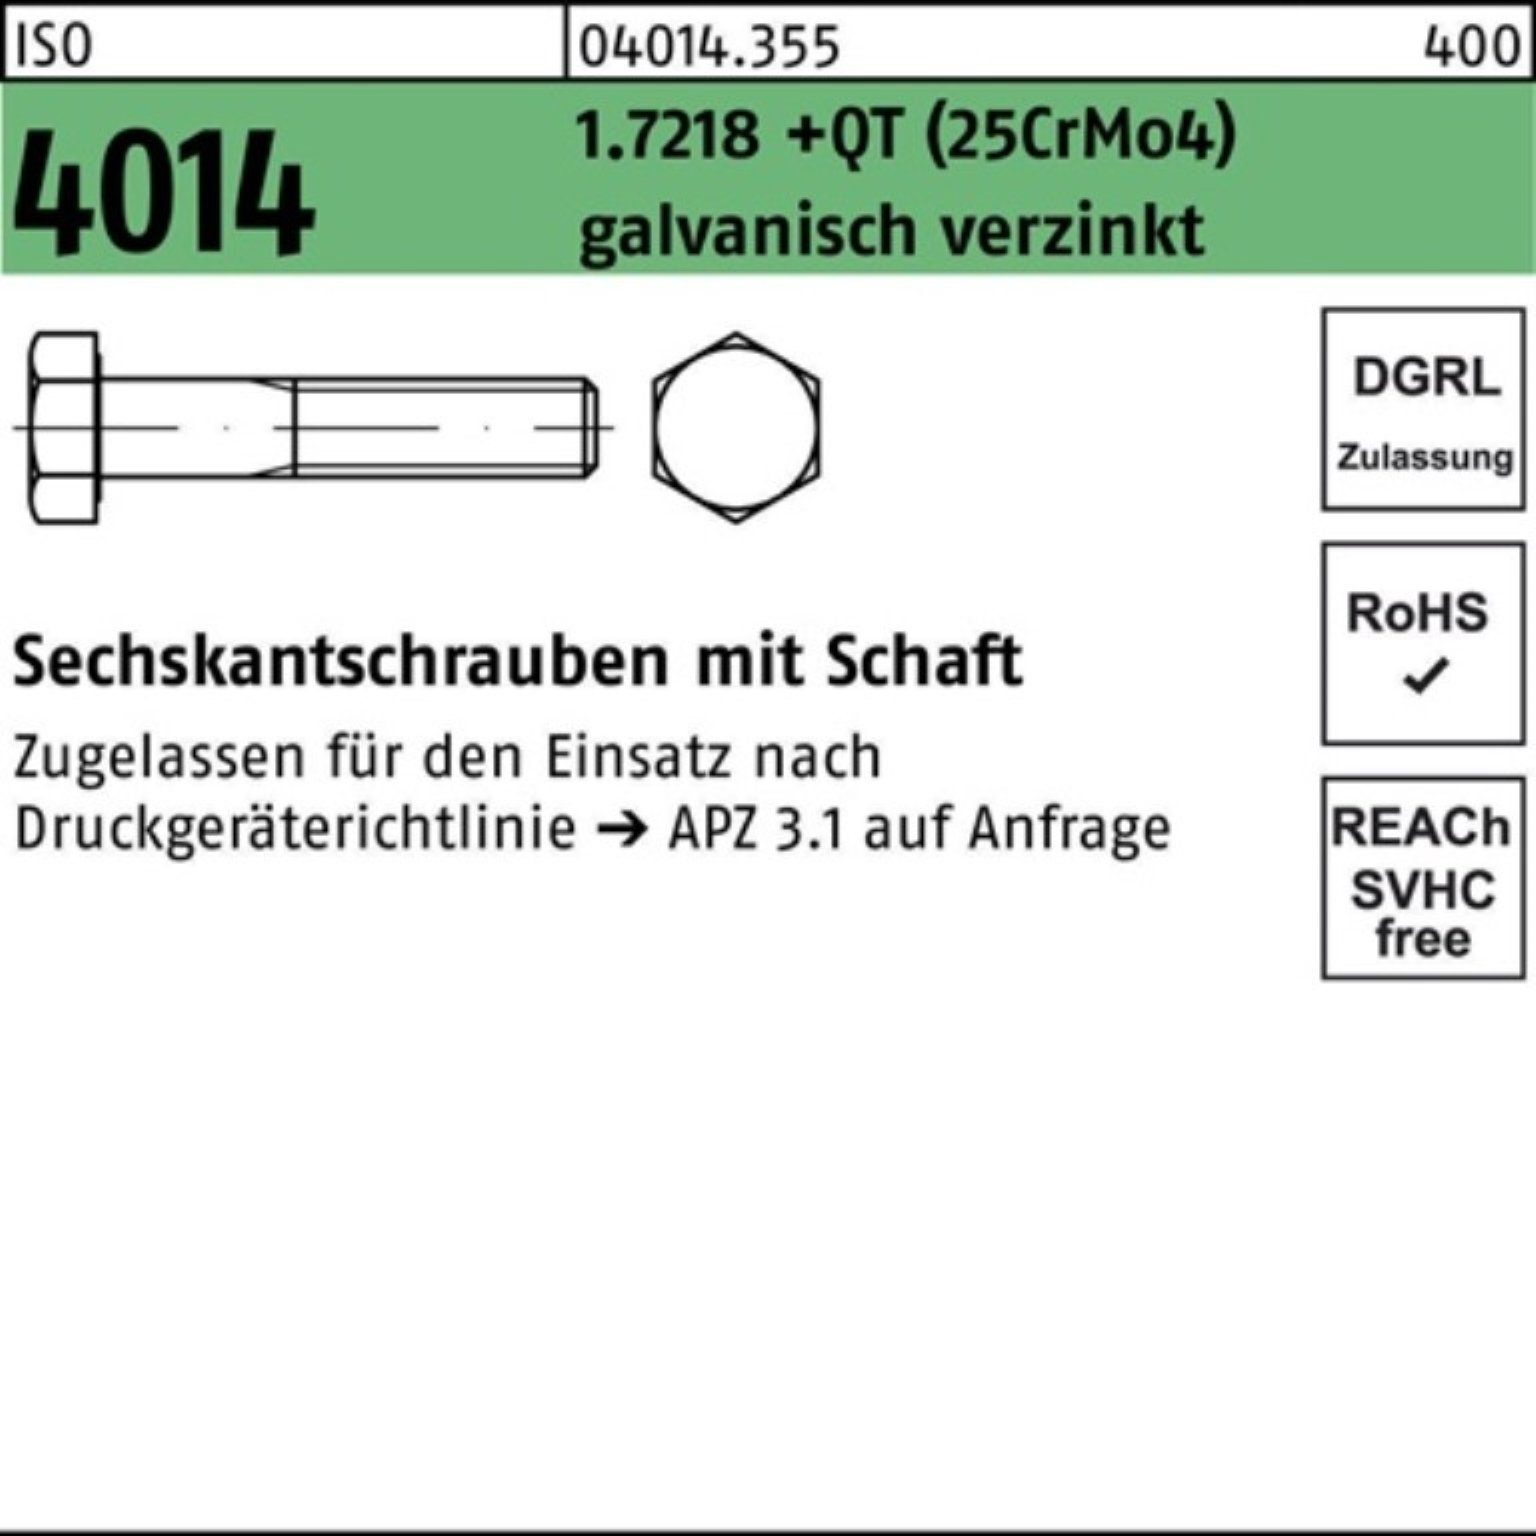 Pack Bufab (25CrM Sechskantschraube 1.7218 Schaft Sechskantschraube M12x160 100er ISO +QT 4014